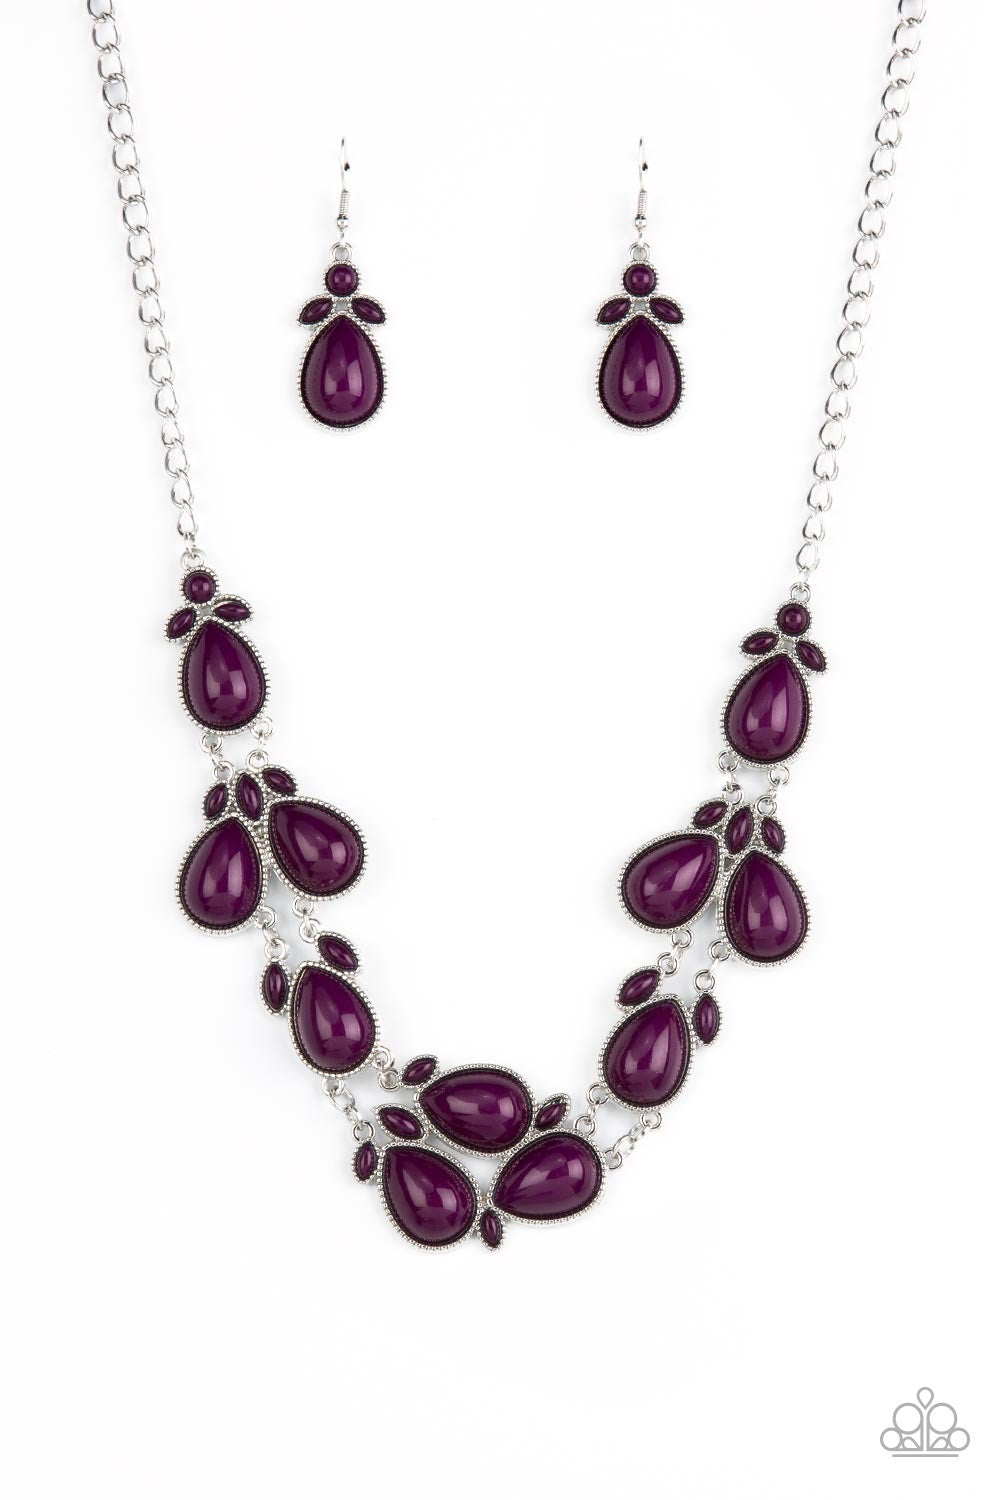 Botanical Banquet - Purple necklace